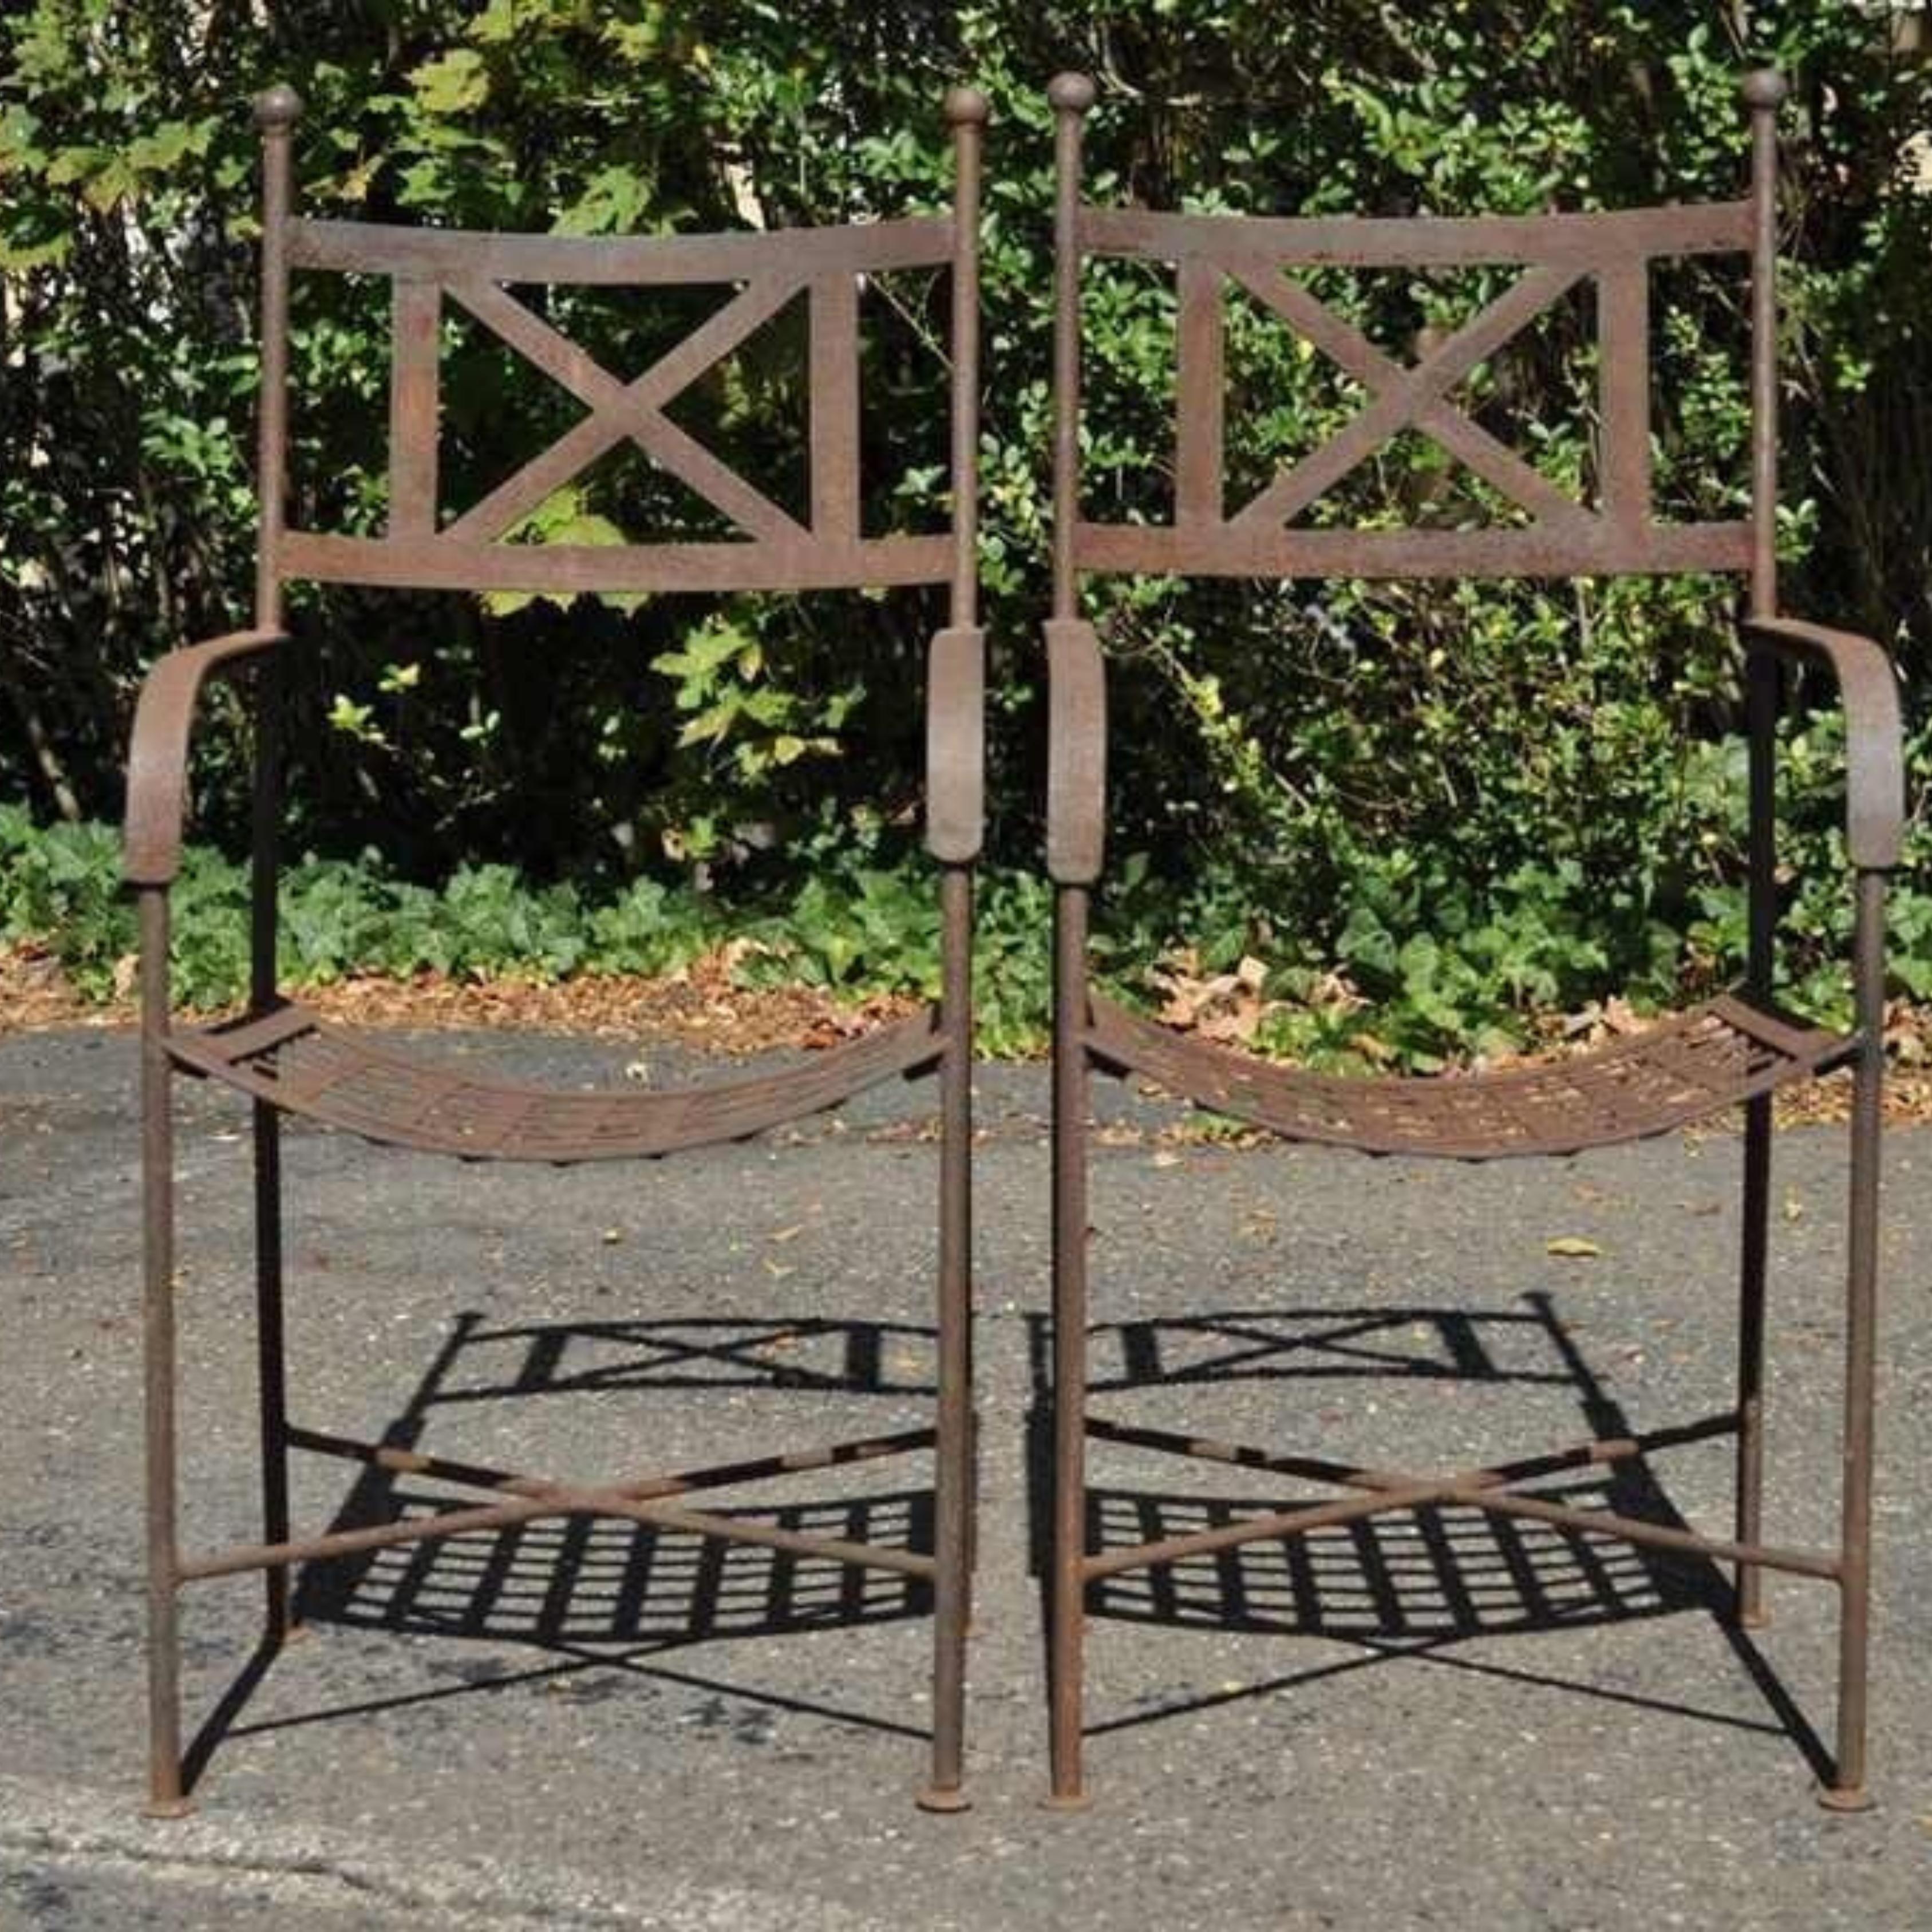 Vintage Neoklassischen Regency-Stil Eisen X Form Stretcher Garten Arm Stühle - ein Paar. Der abgebildete Artikel hat eine robuste Konstruktion mit x-förmigem Lattenrost, genietete Lattenbänke, verwittertes Finish, sehr schönes Vintage-Set. Circa